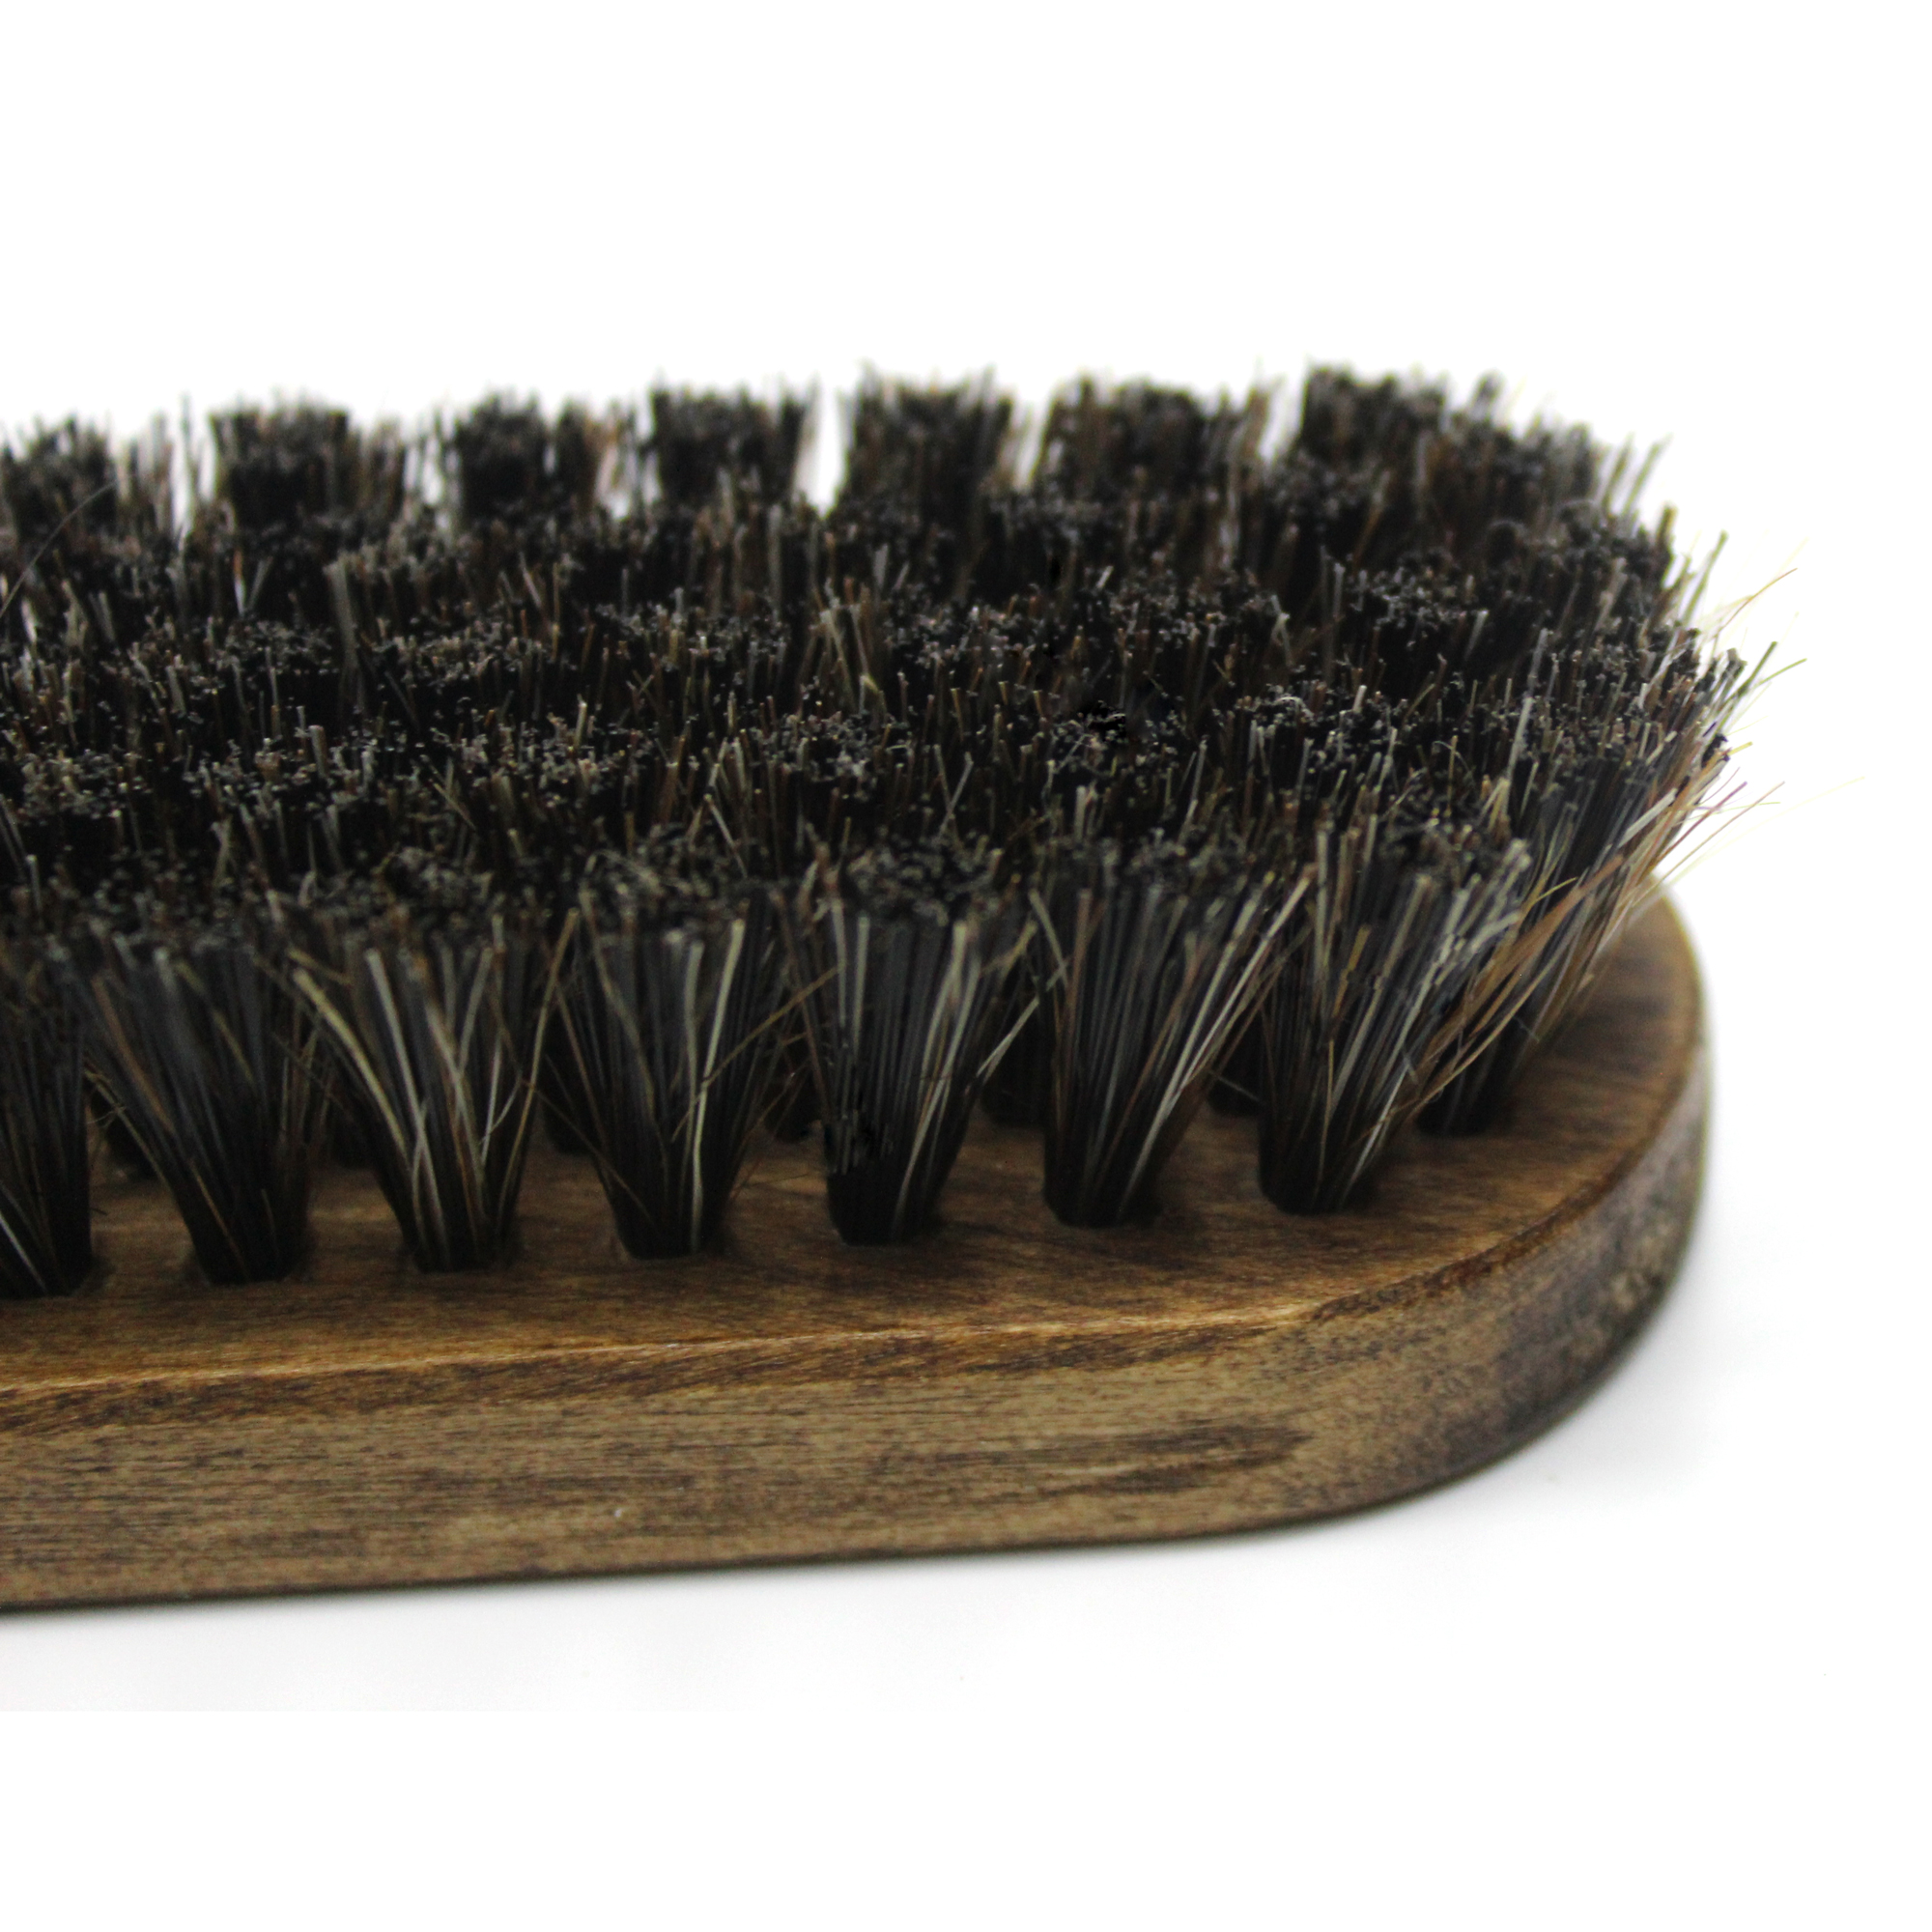 Maxshine Horse Hair Cleaning Brush at Rs 939.00, Horse Hair Brushes